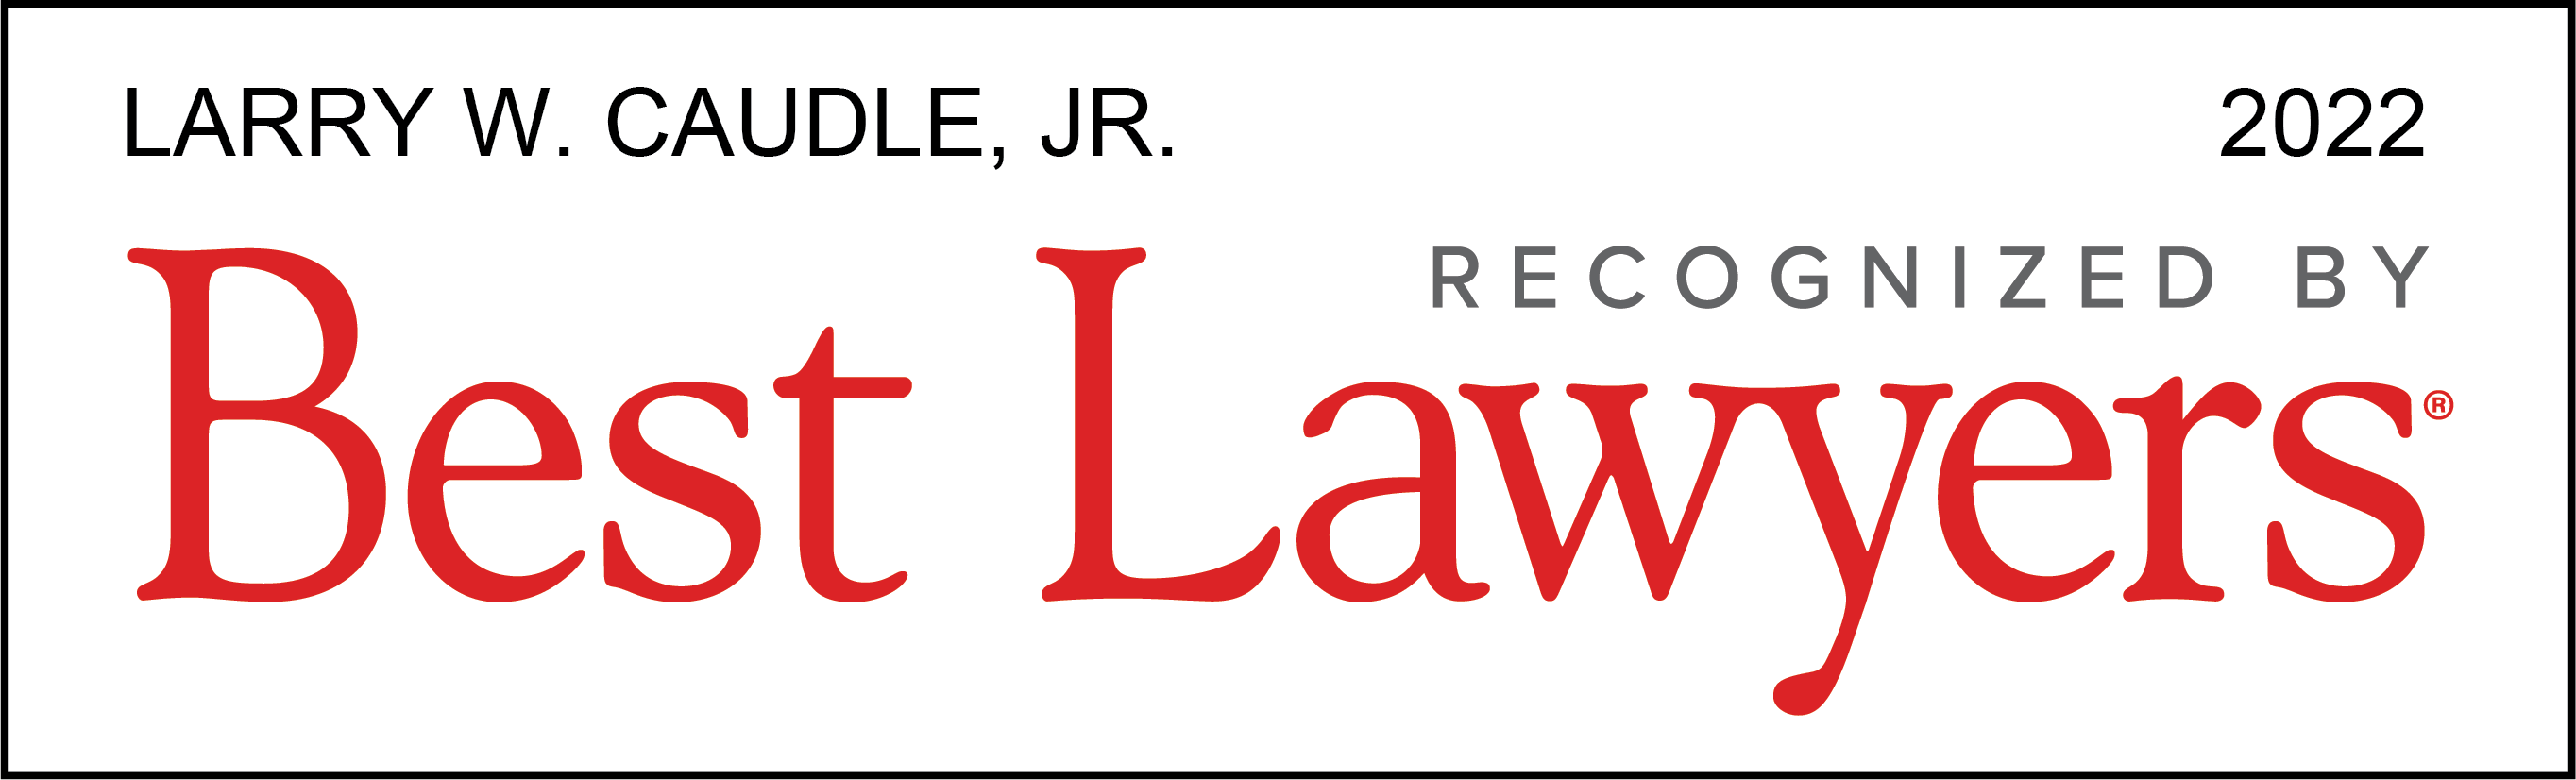 Larry Caudle, Jr. Best Lawyers 2022